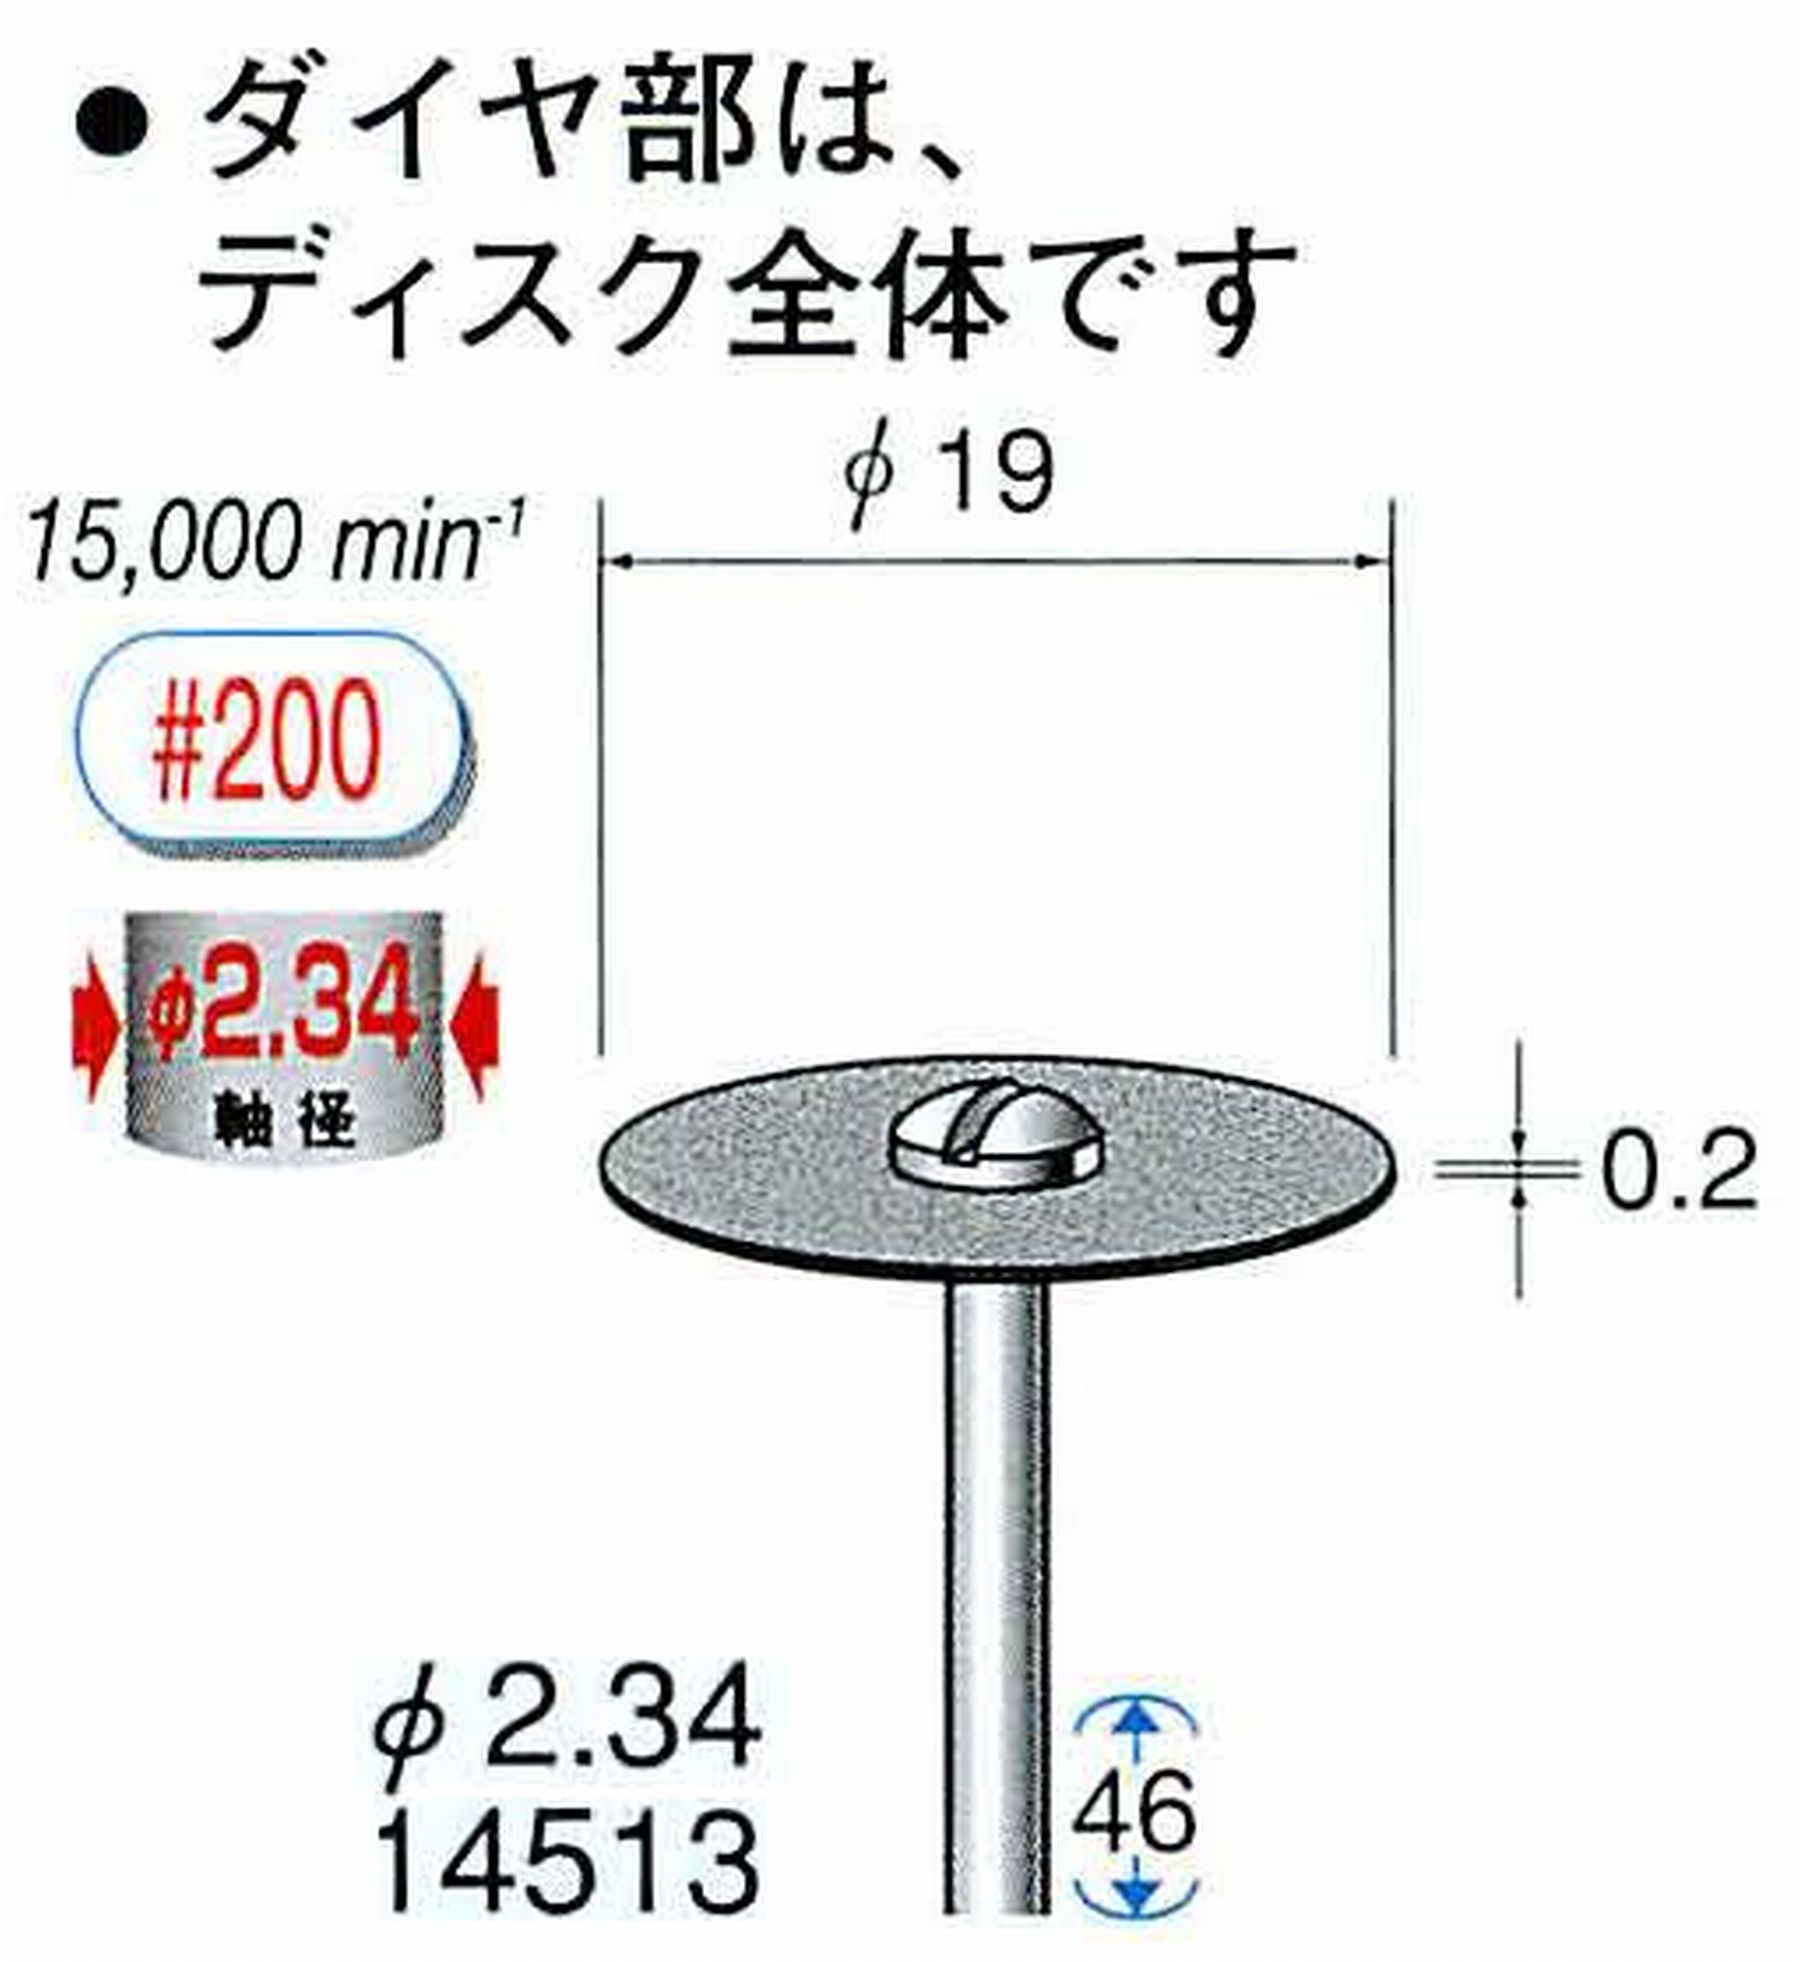 ナカニシ/NAKANISHI ダイヤモンドカッティングディスク メタルボンドタイプ 軸径(シャンク)φ2.34mm 14513